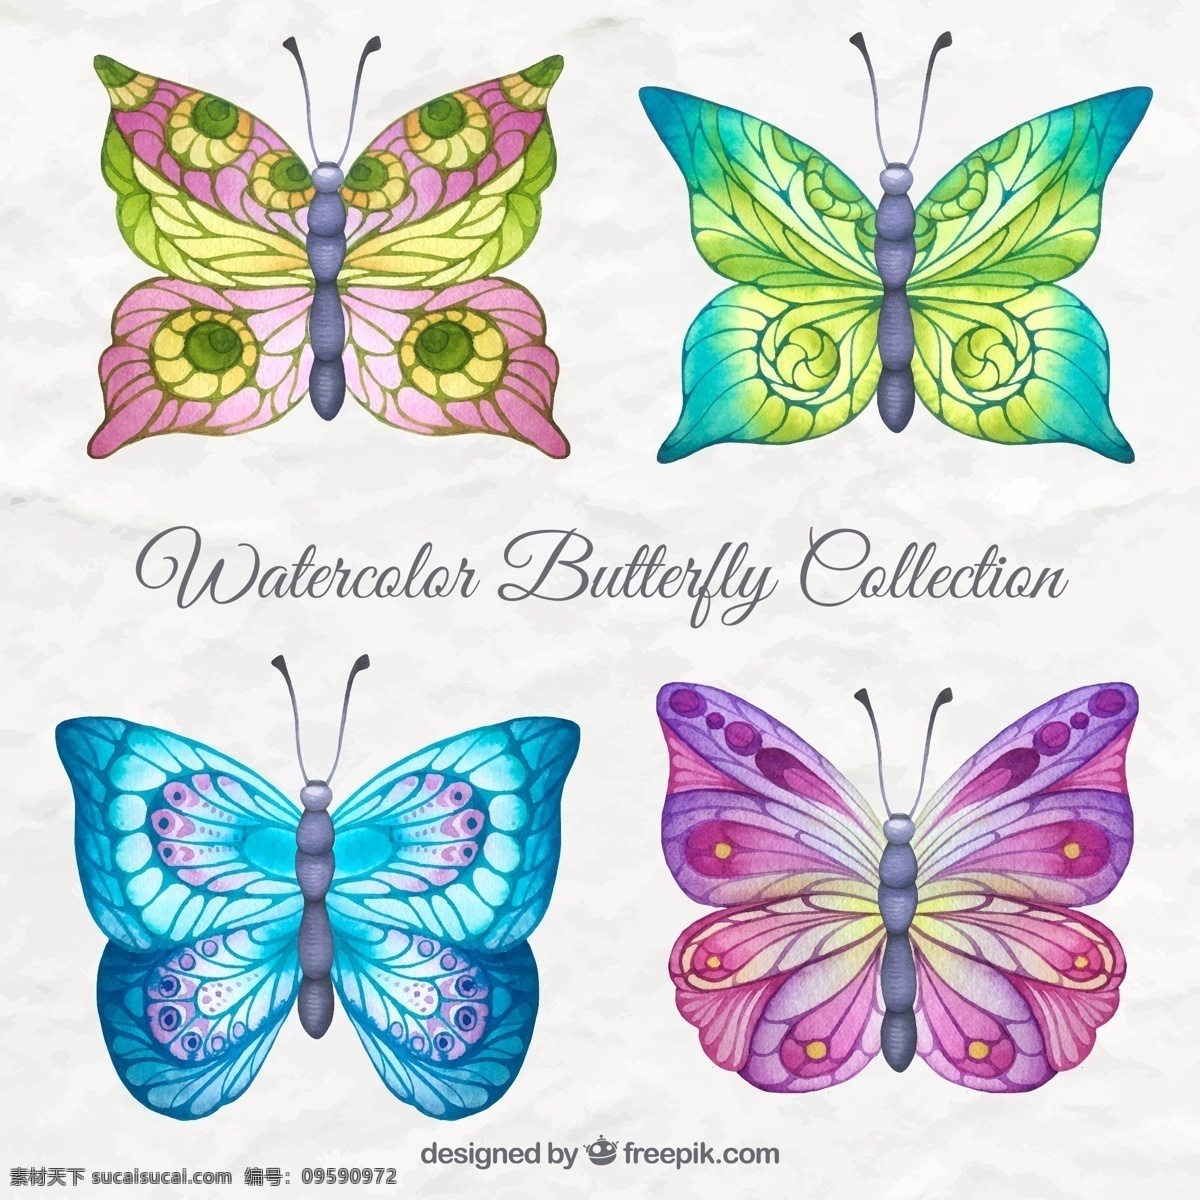 七彩蝴蝶 抽象 水彩 手 蝴蝶 自然 动物 形状 可爱 色彩鲜艳 颜色自然 飞 飞行 昆虫 摘要 插图 手绘